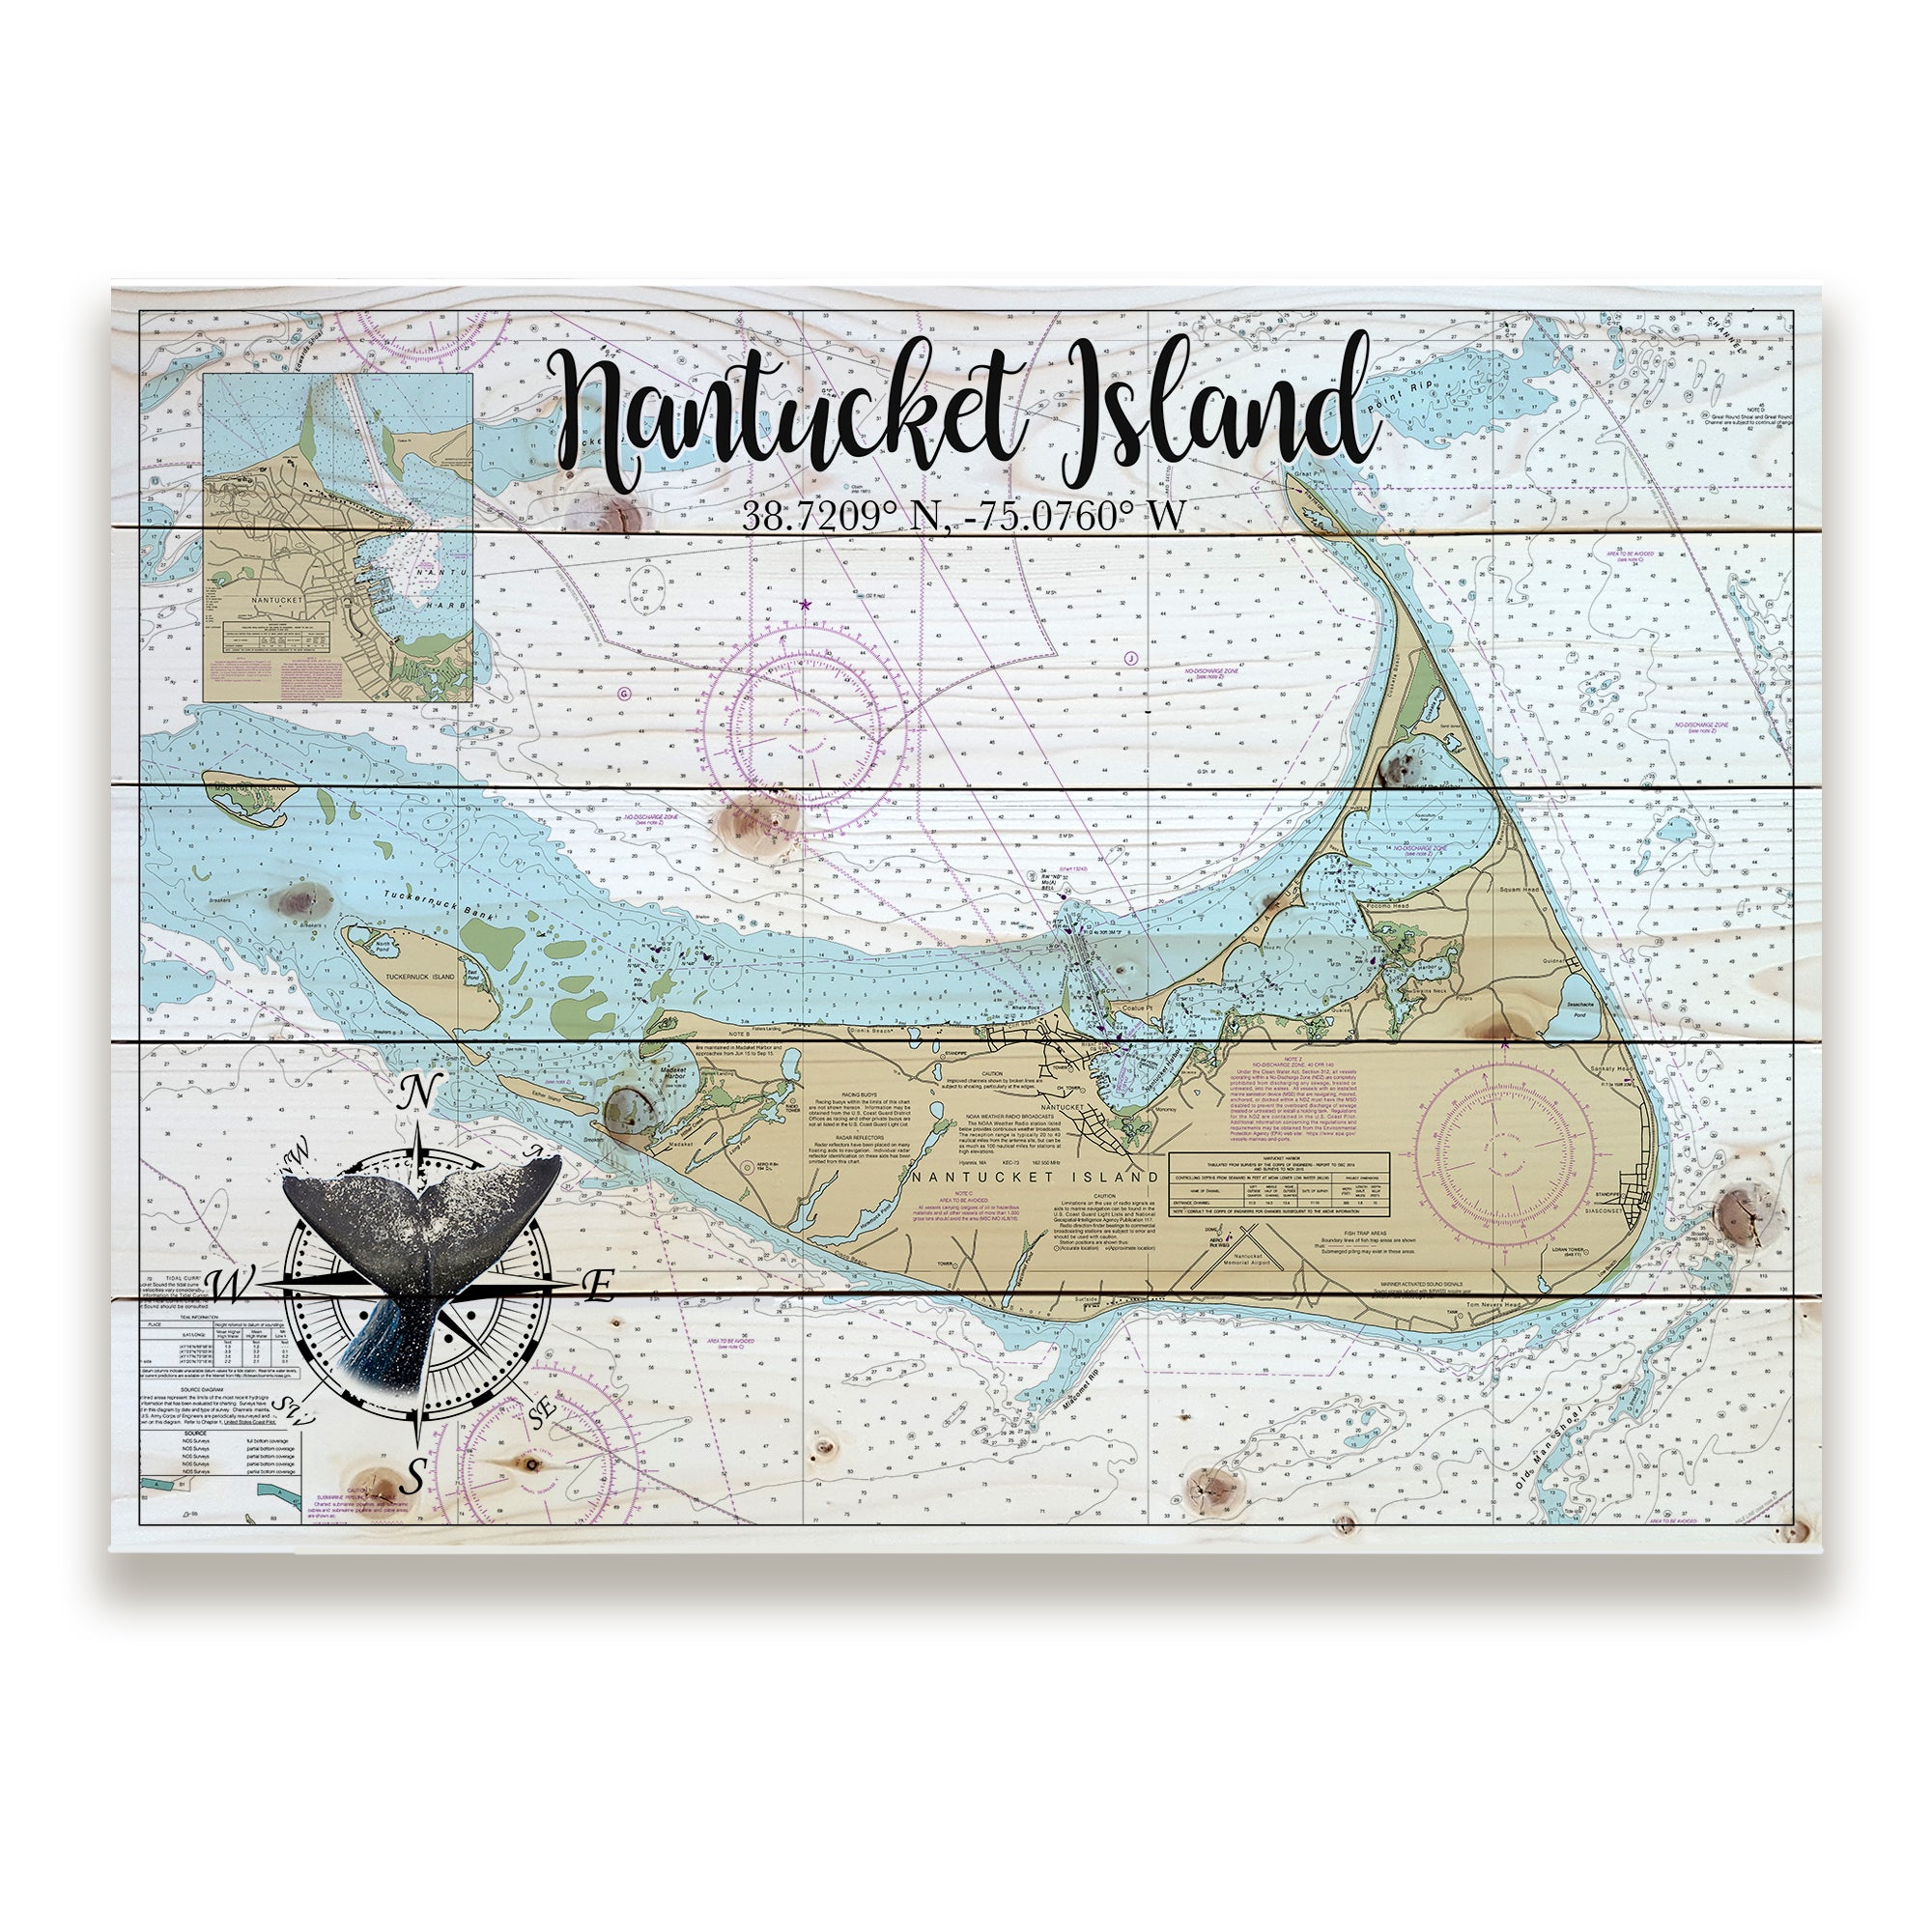 Nantucket Island Pallet Map